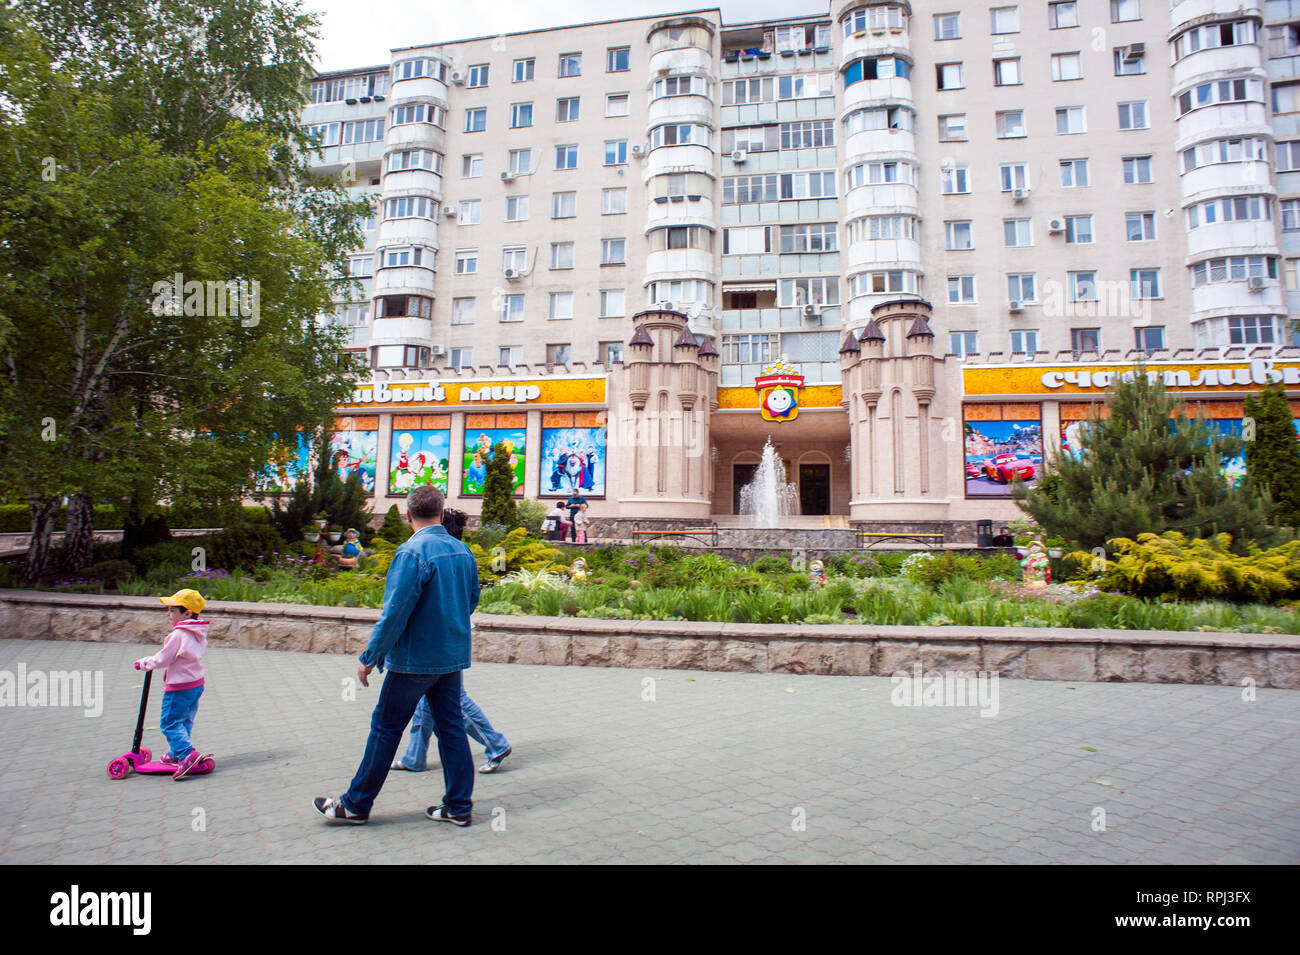 Ein Mietshaus in Ufa, der Hauptstadt von Transnistrien, eine Pause vom Staat aus der Republik Moldau. Stockfoto